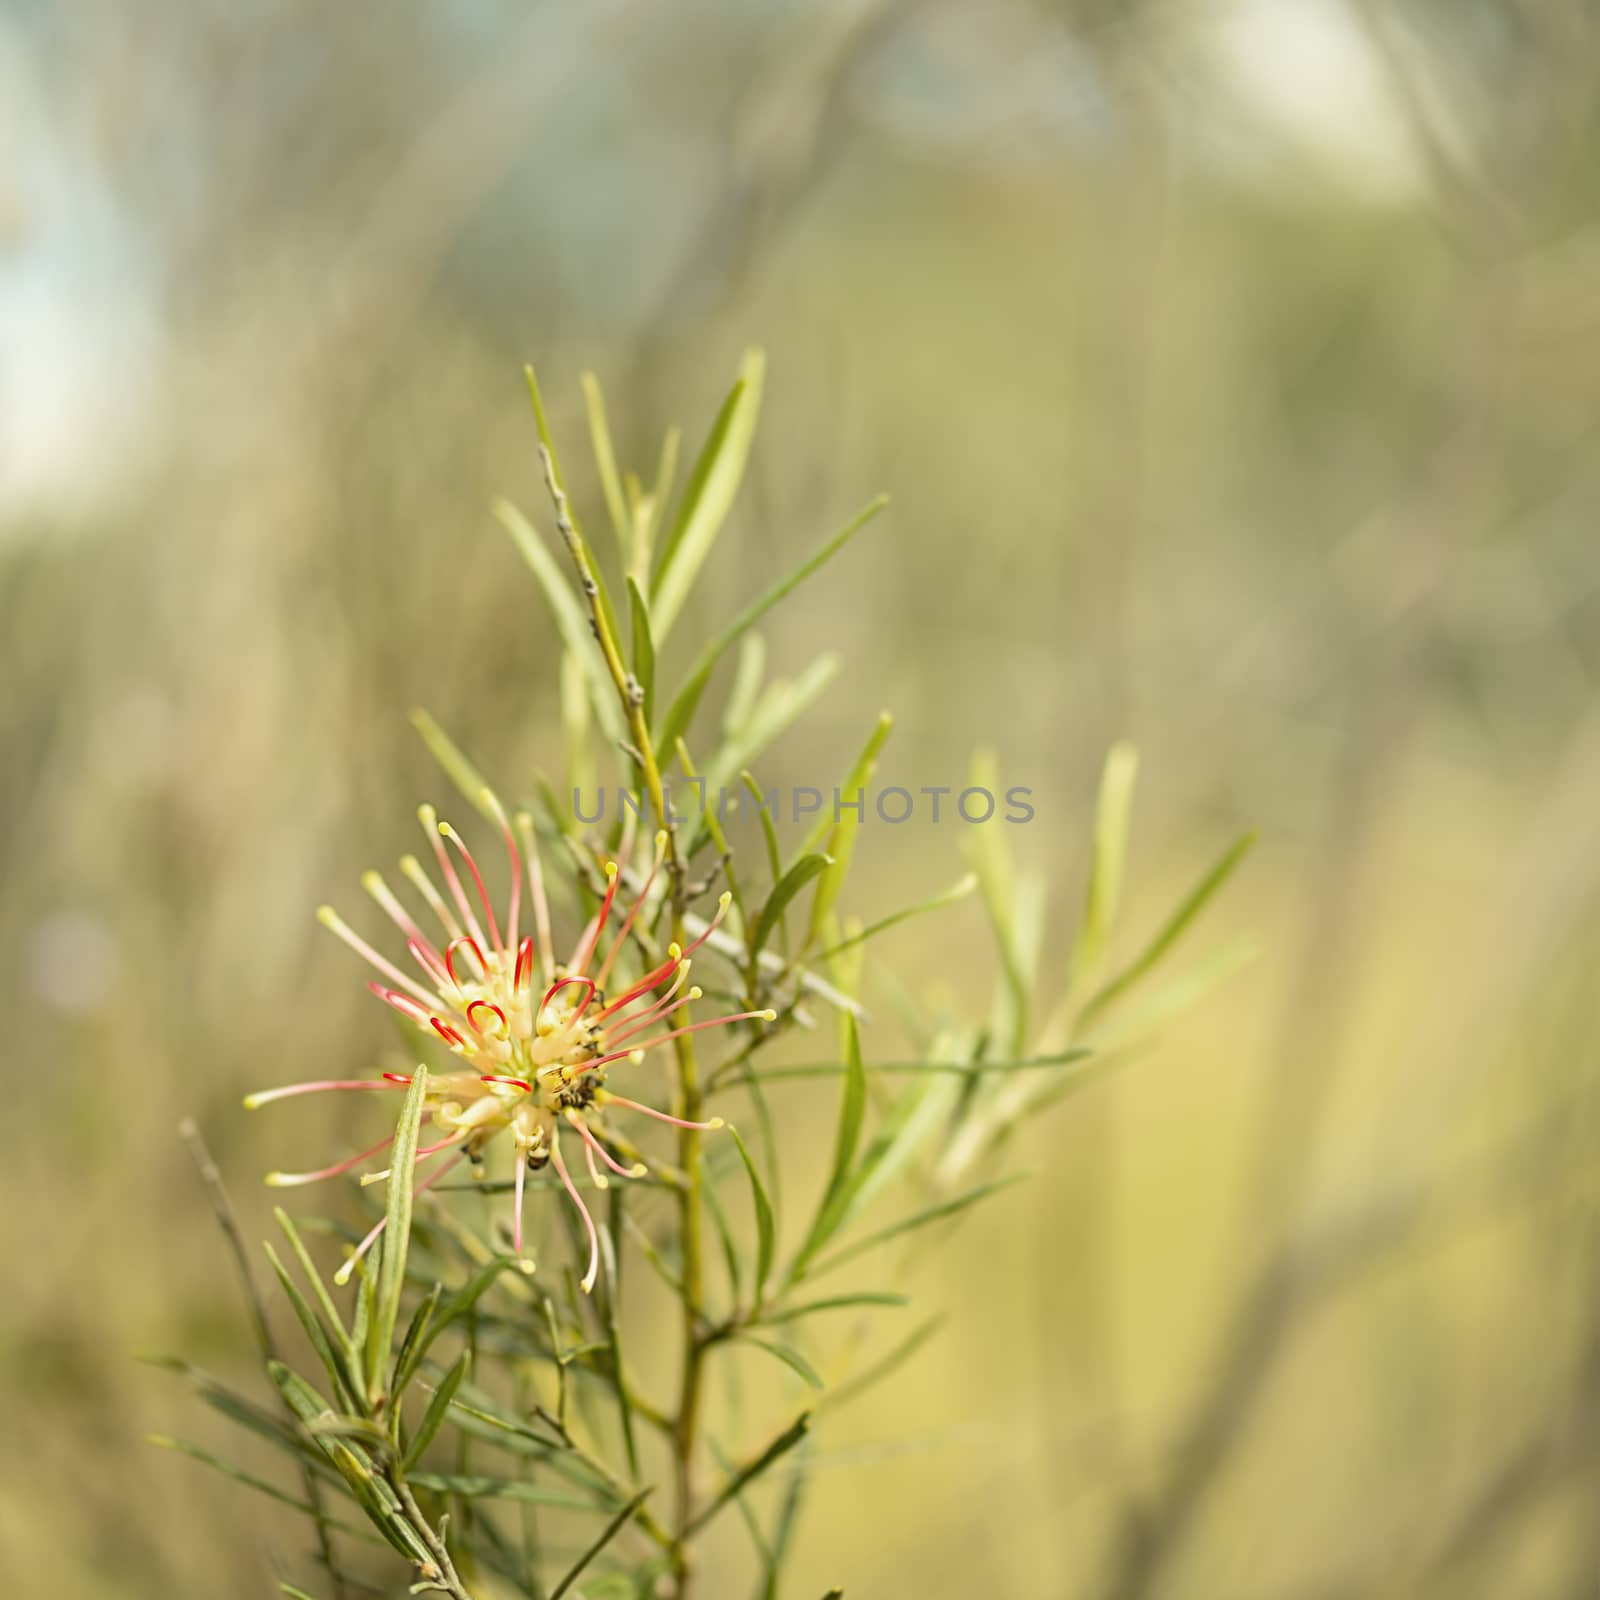 Australia native winter flower Grevillea Flora mason by sherj